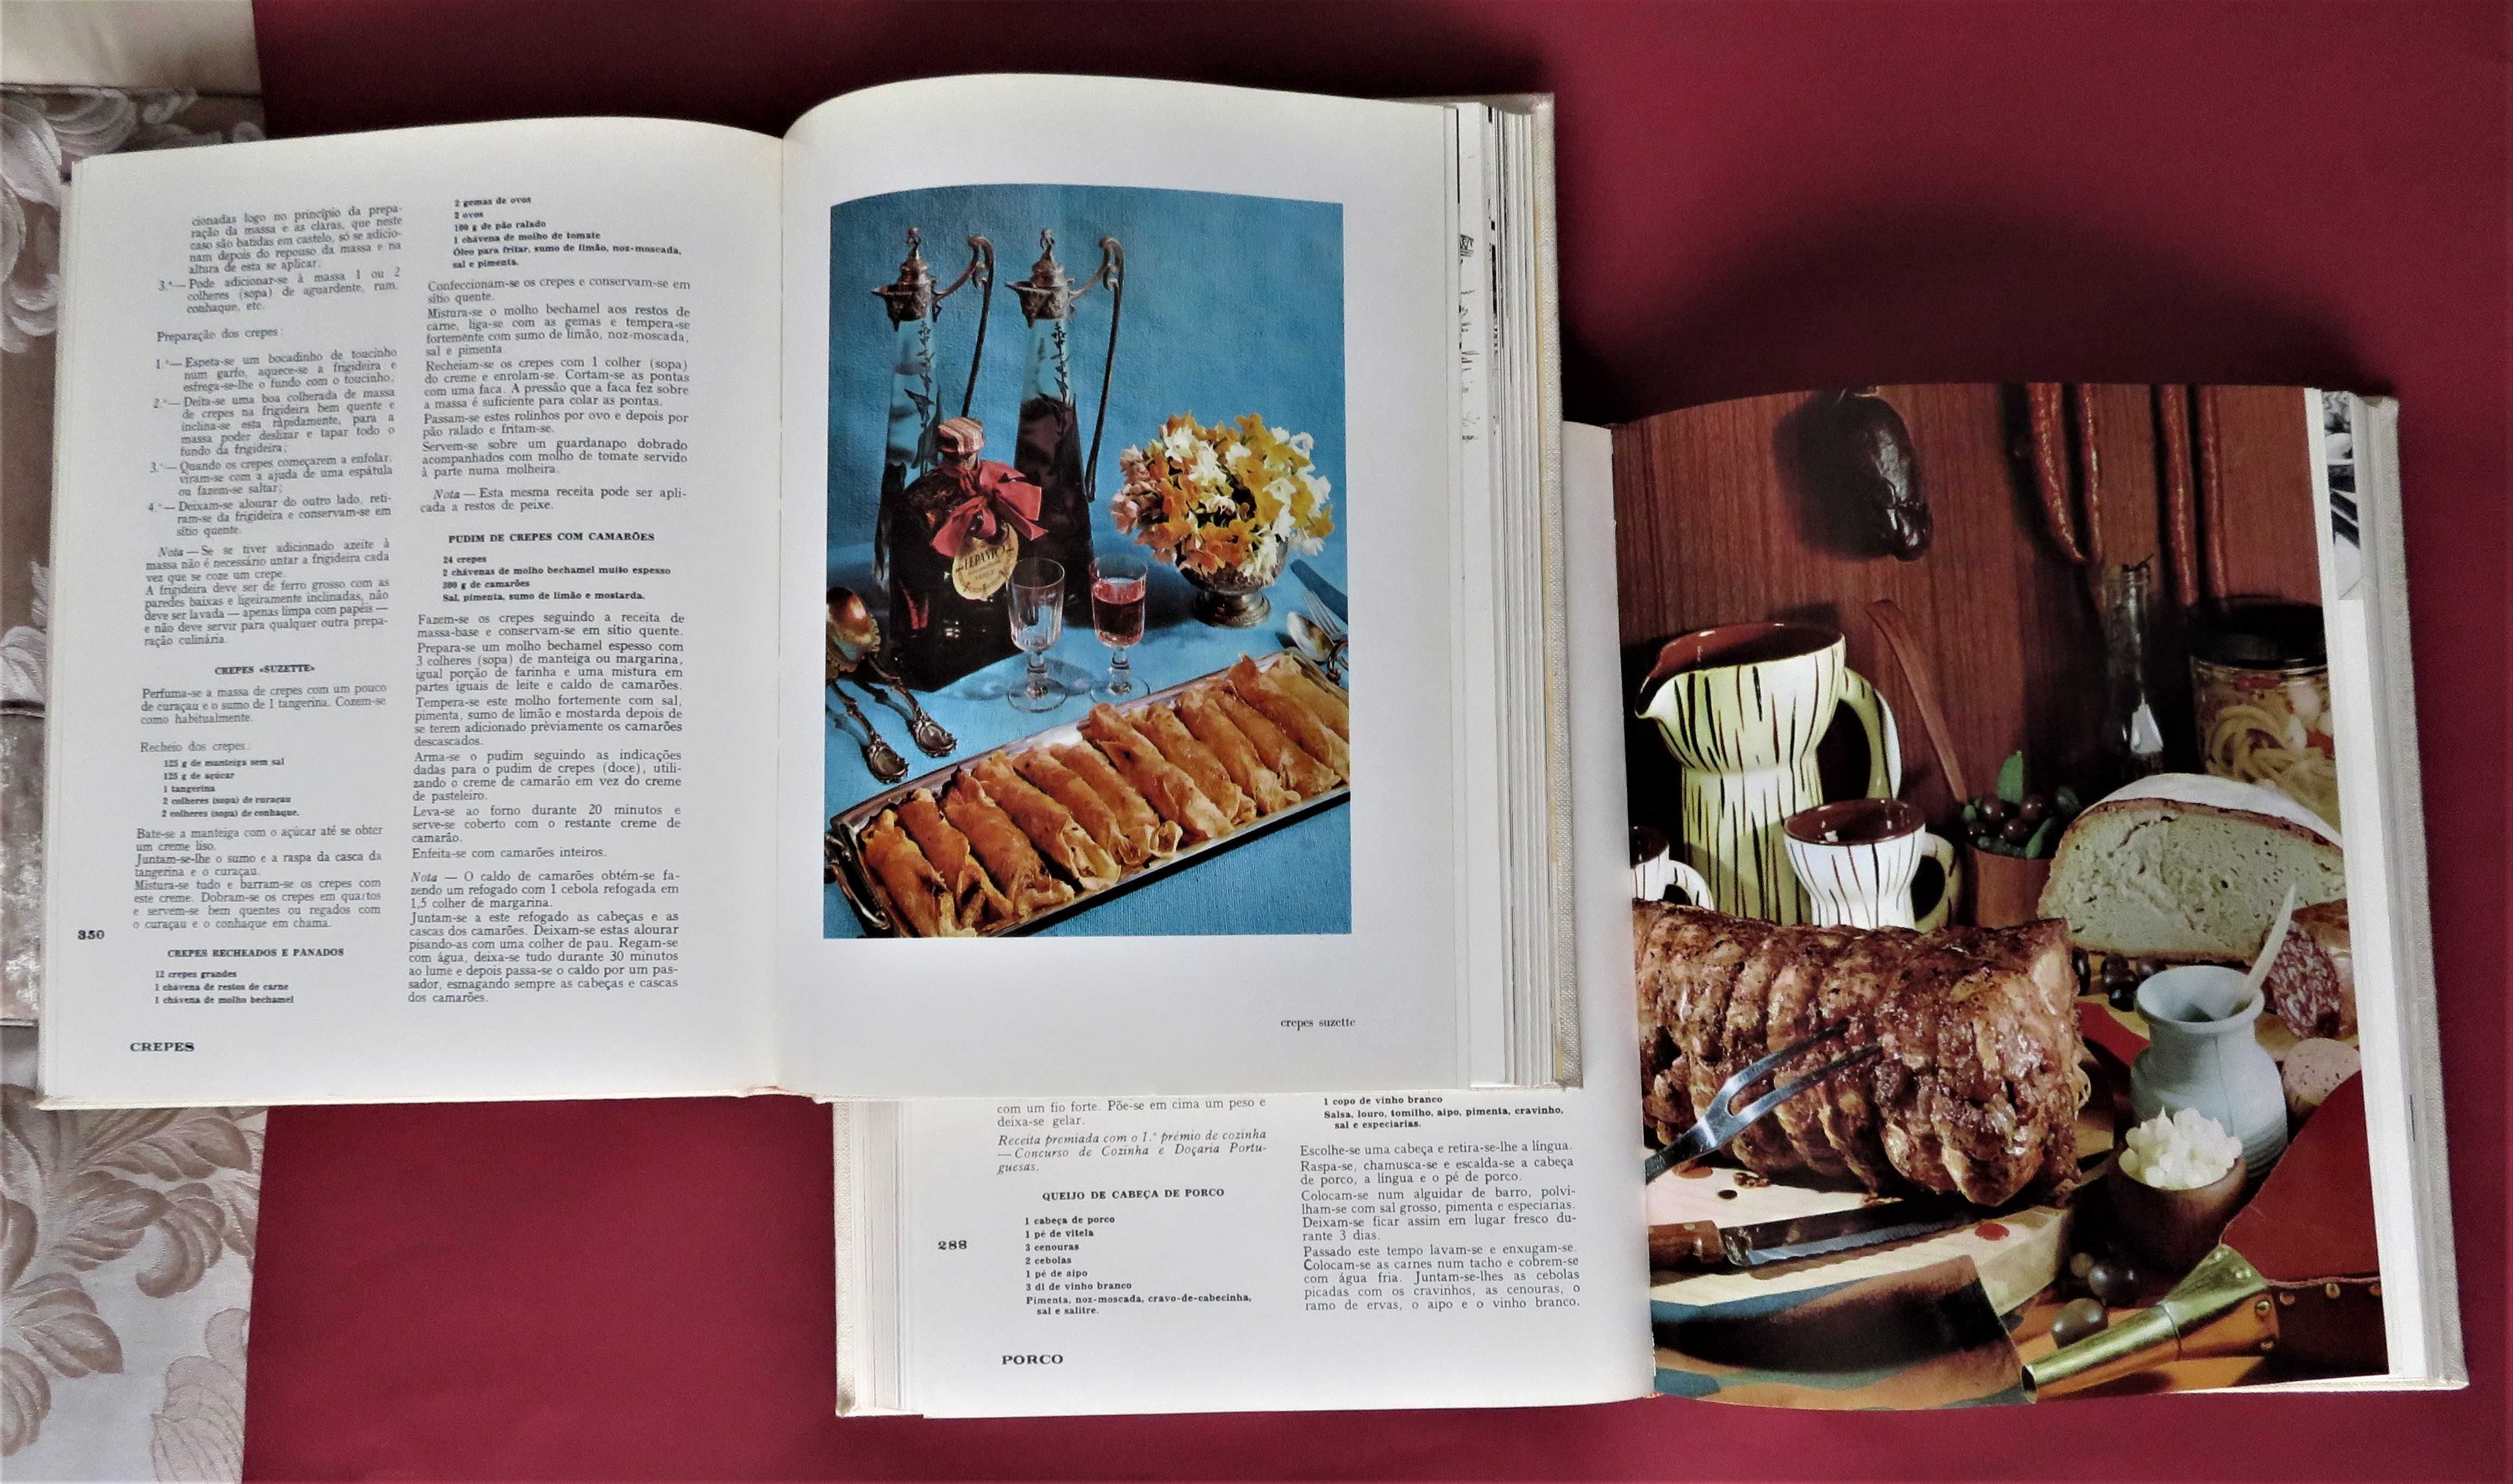 Grande Enciclopédia de Cozinha (Maria de Lourdes Modesto)